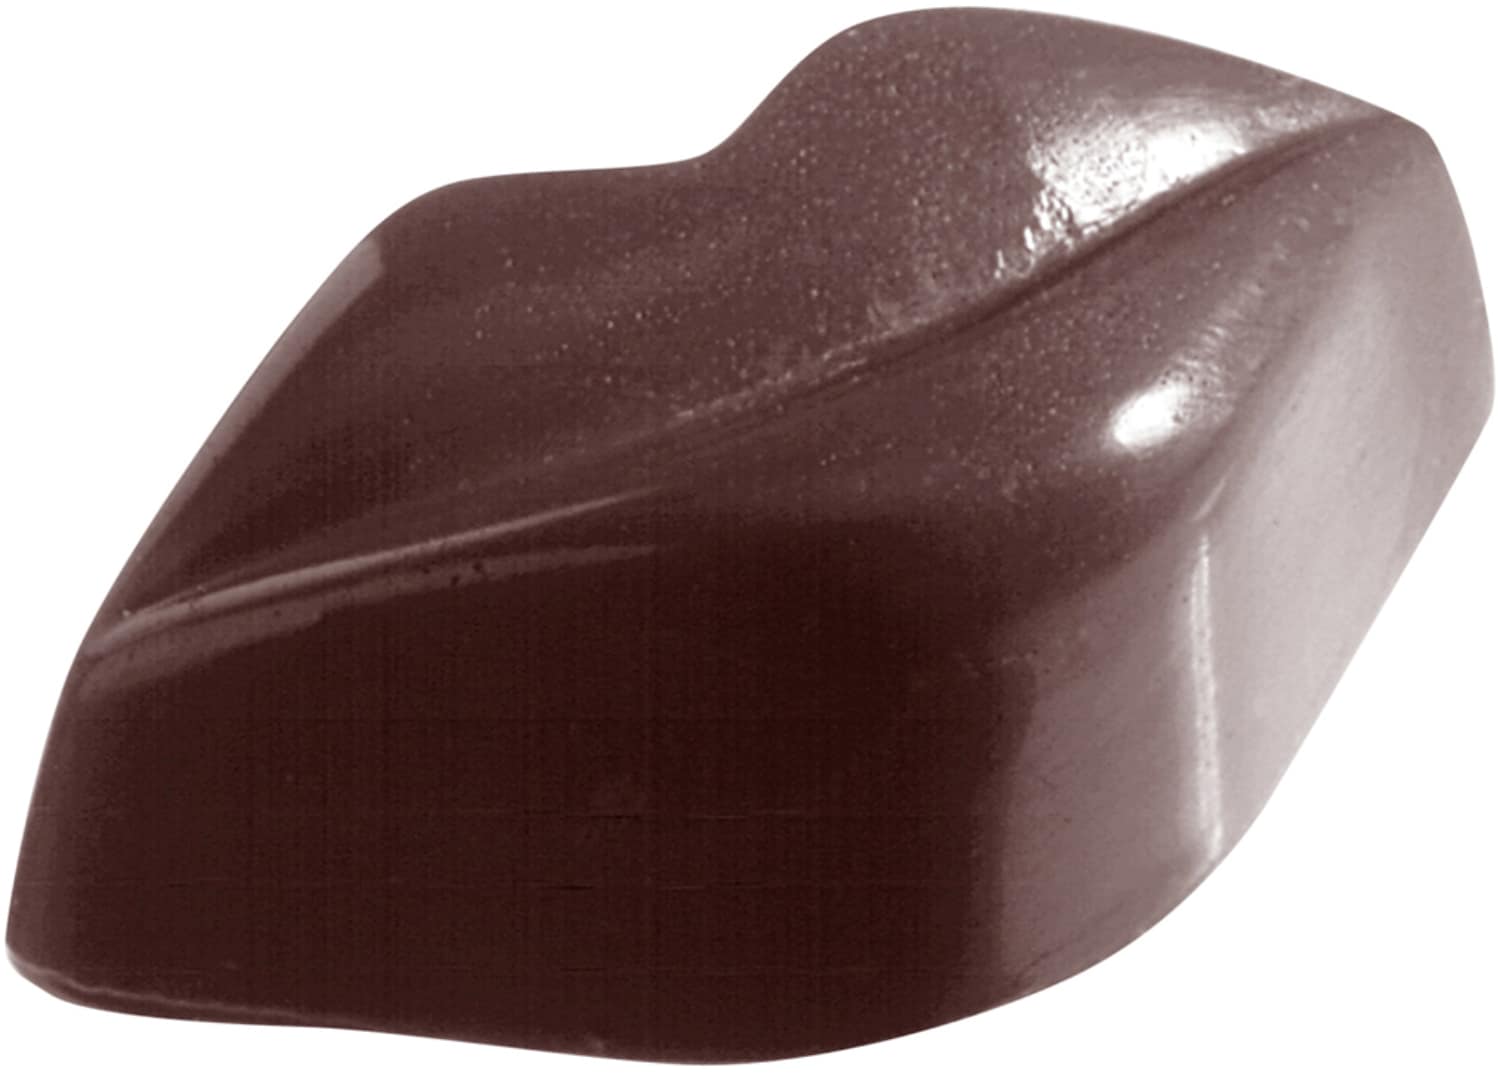 Schokoladenform "Mund" 421296